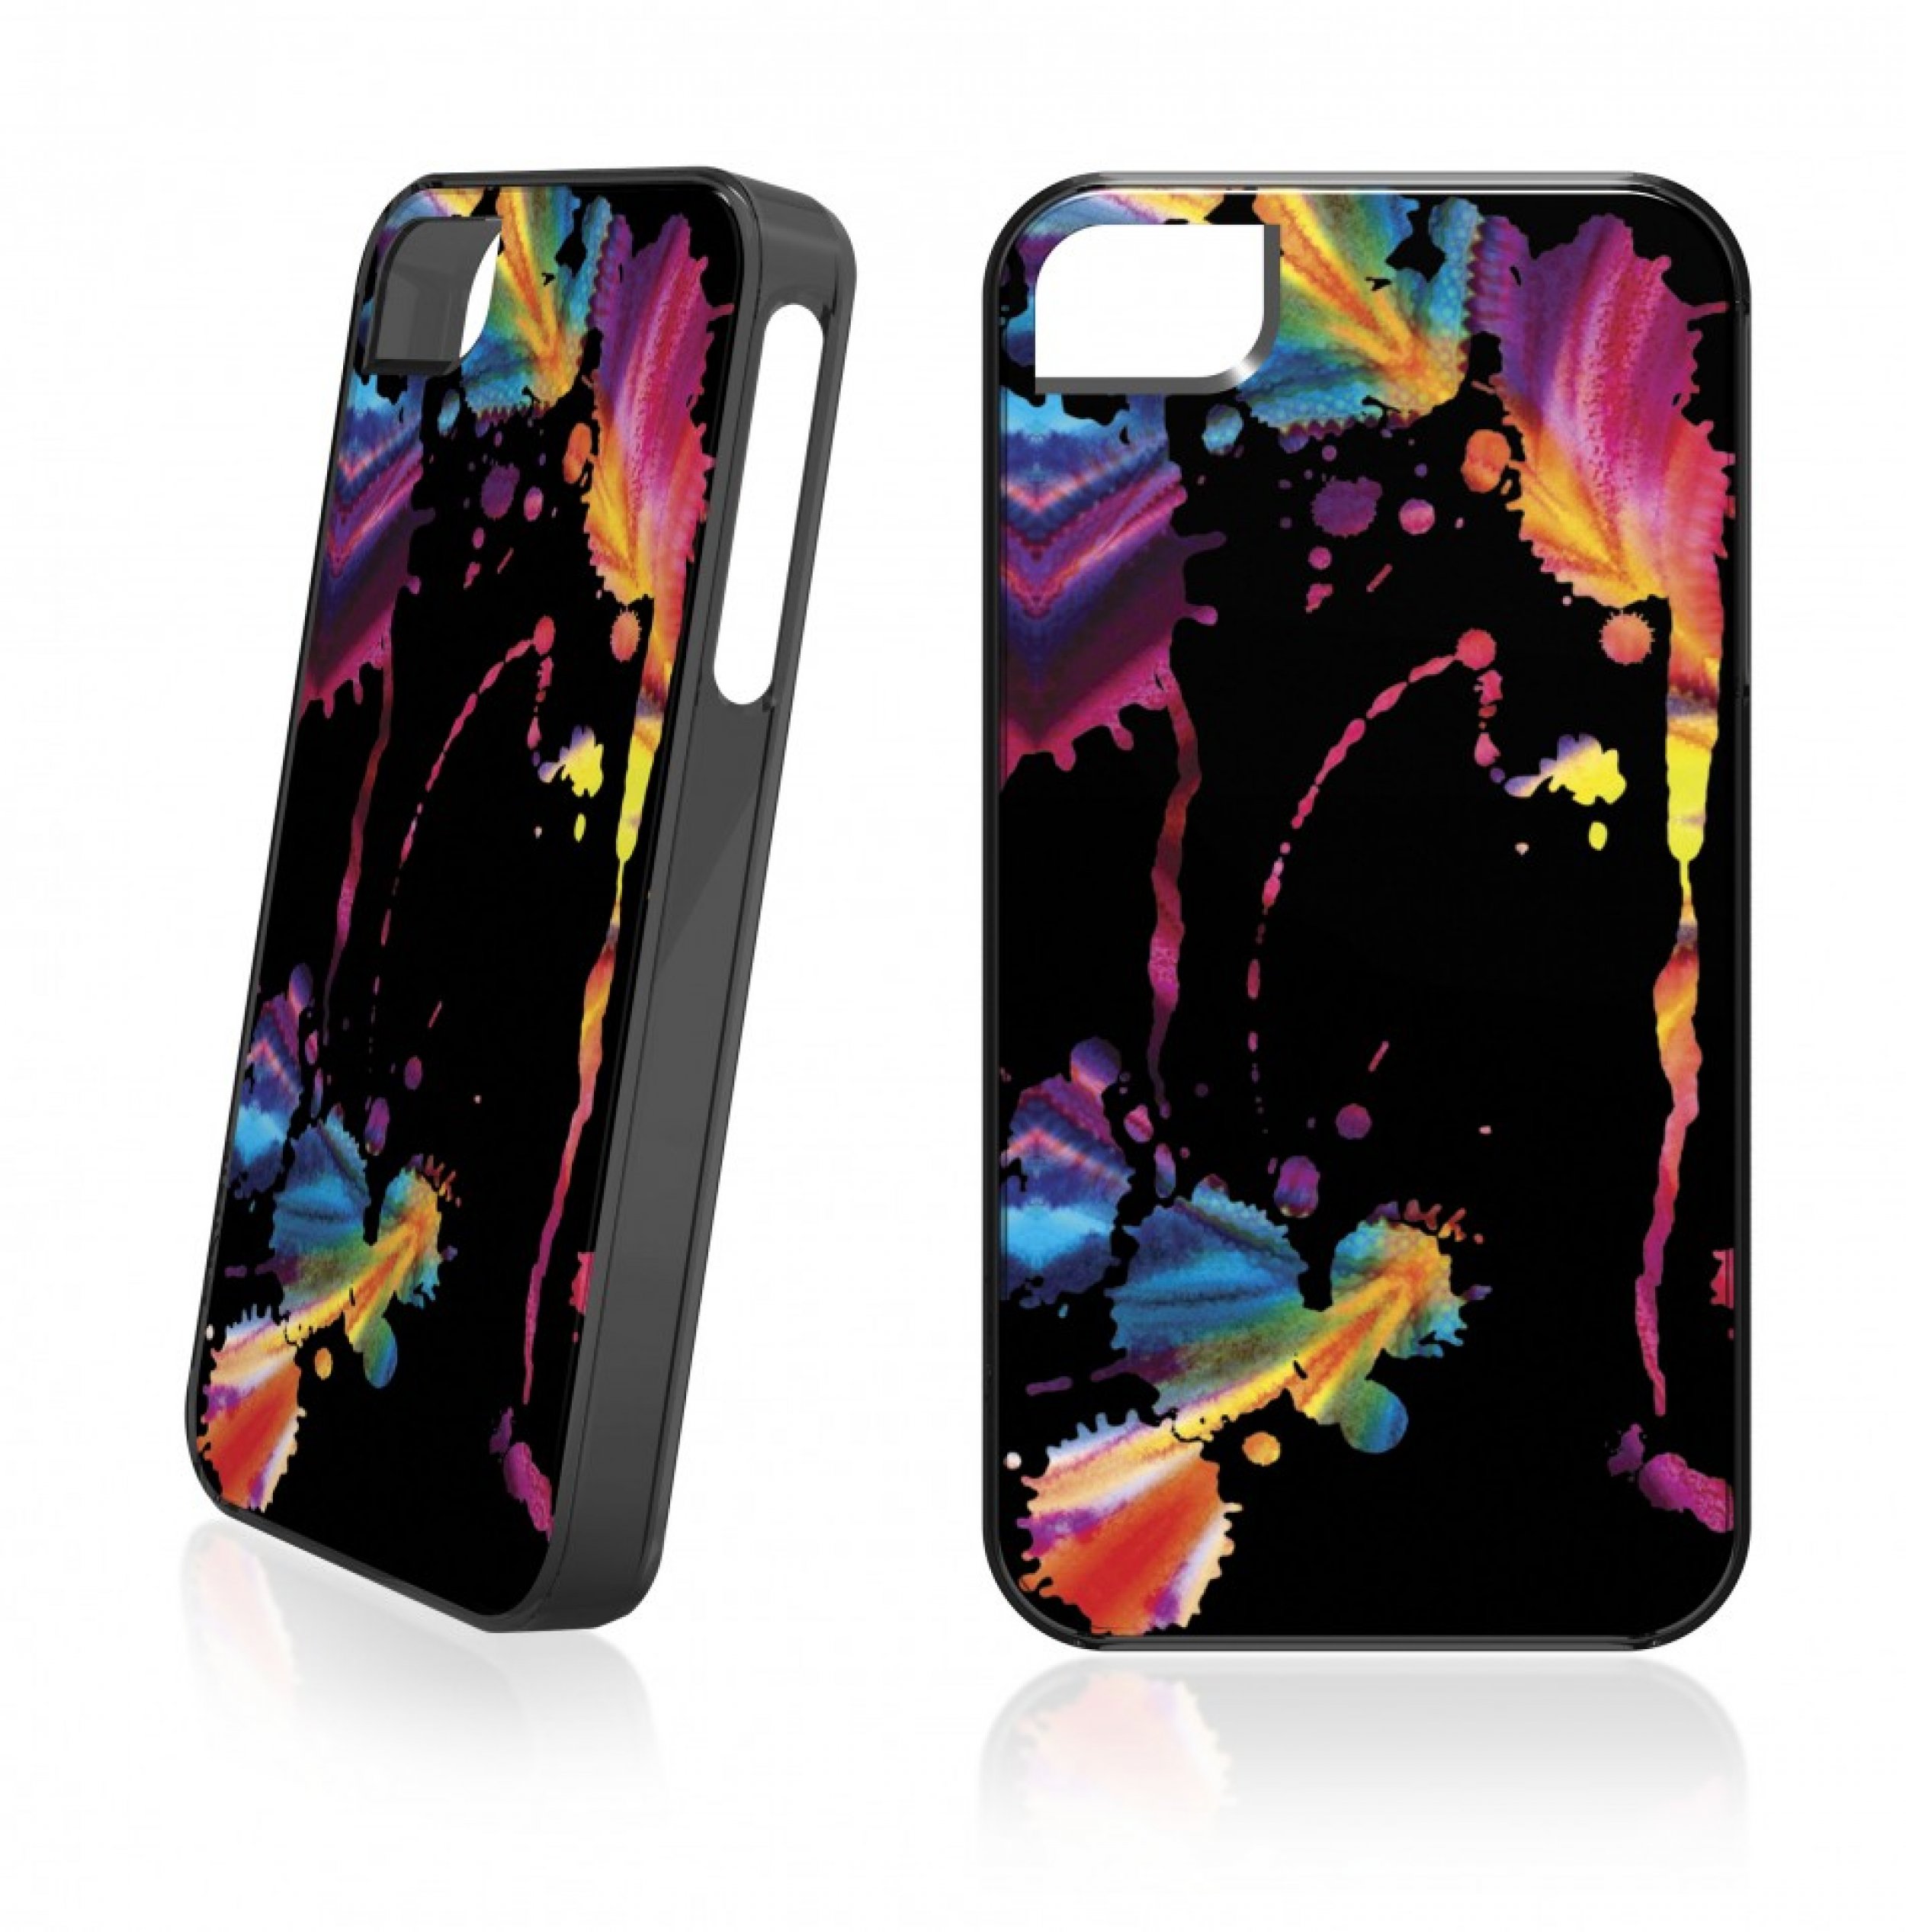 8. Chromatic Splatter Black Case For iPhone 5 -Available for 24.99 